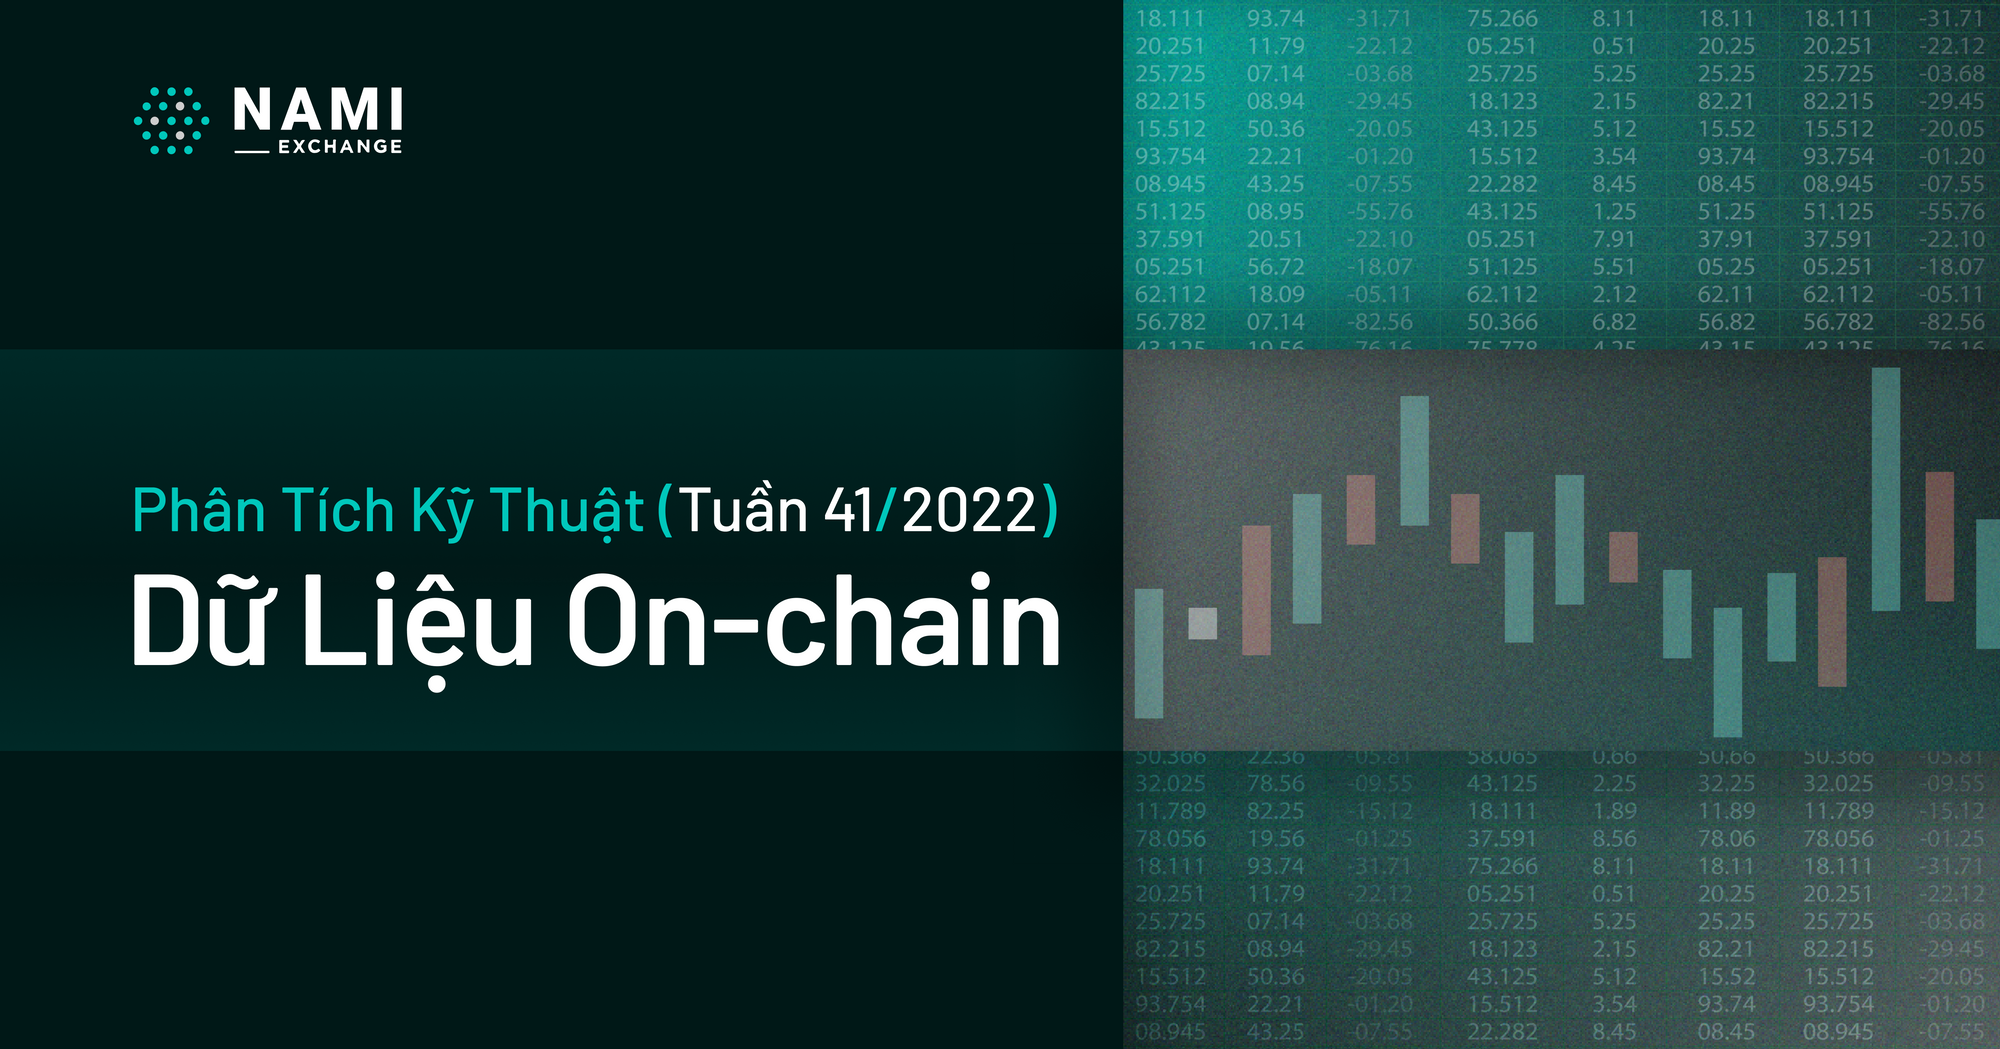 Phân tích dữ liệu On-chain (tuần 41/2022)